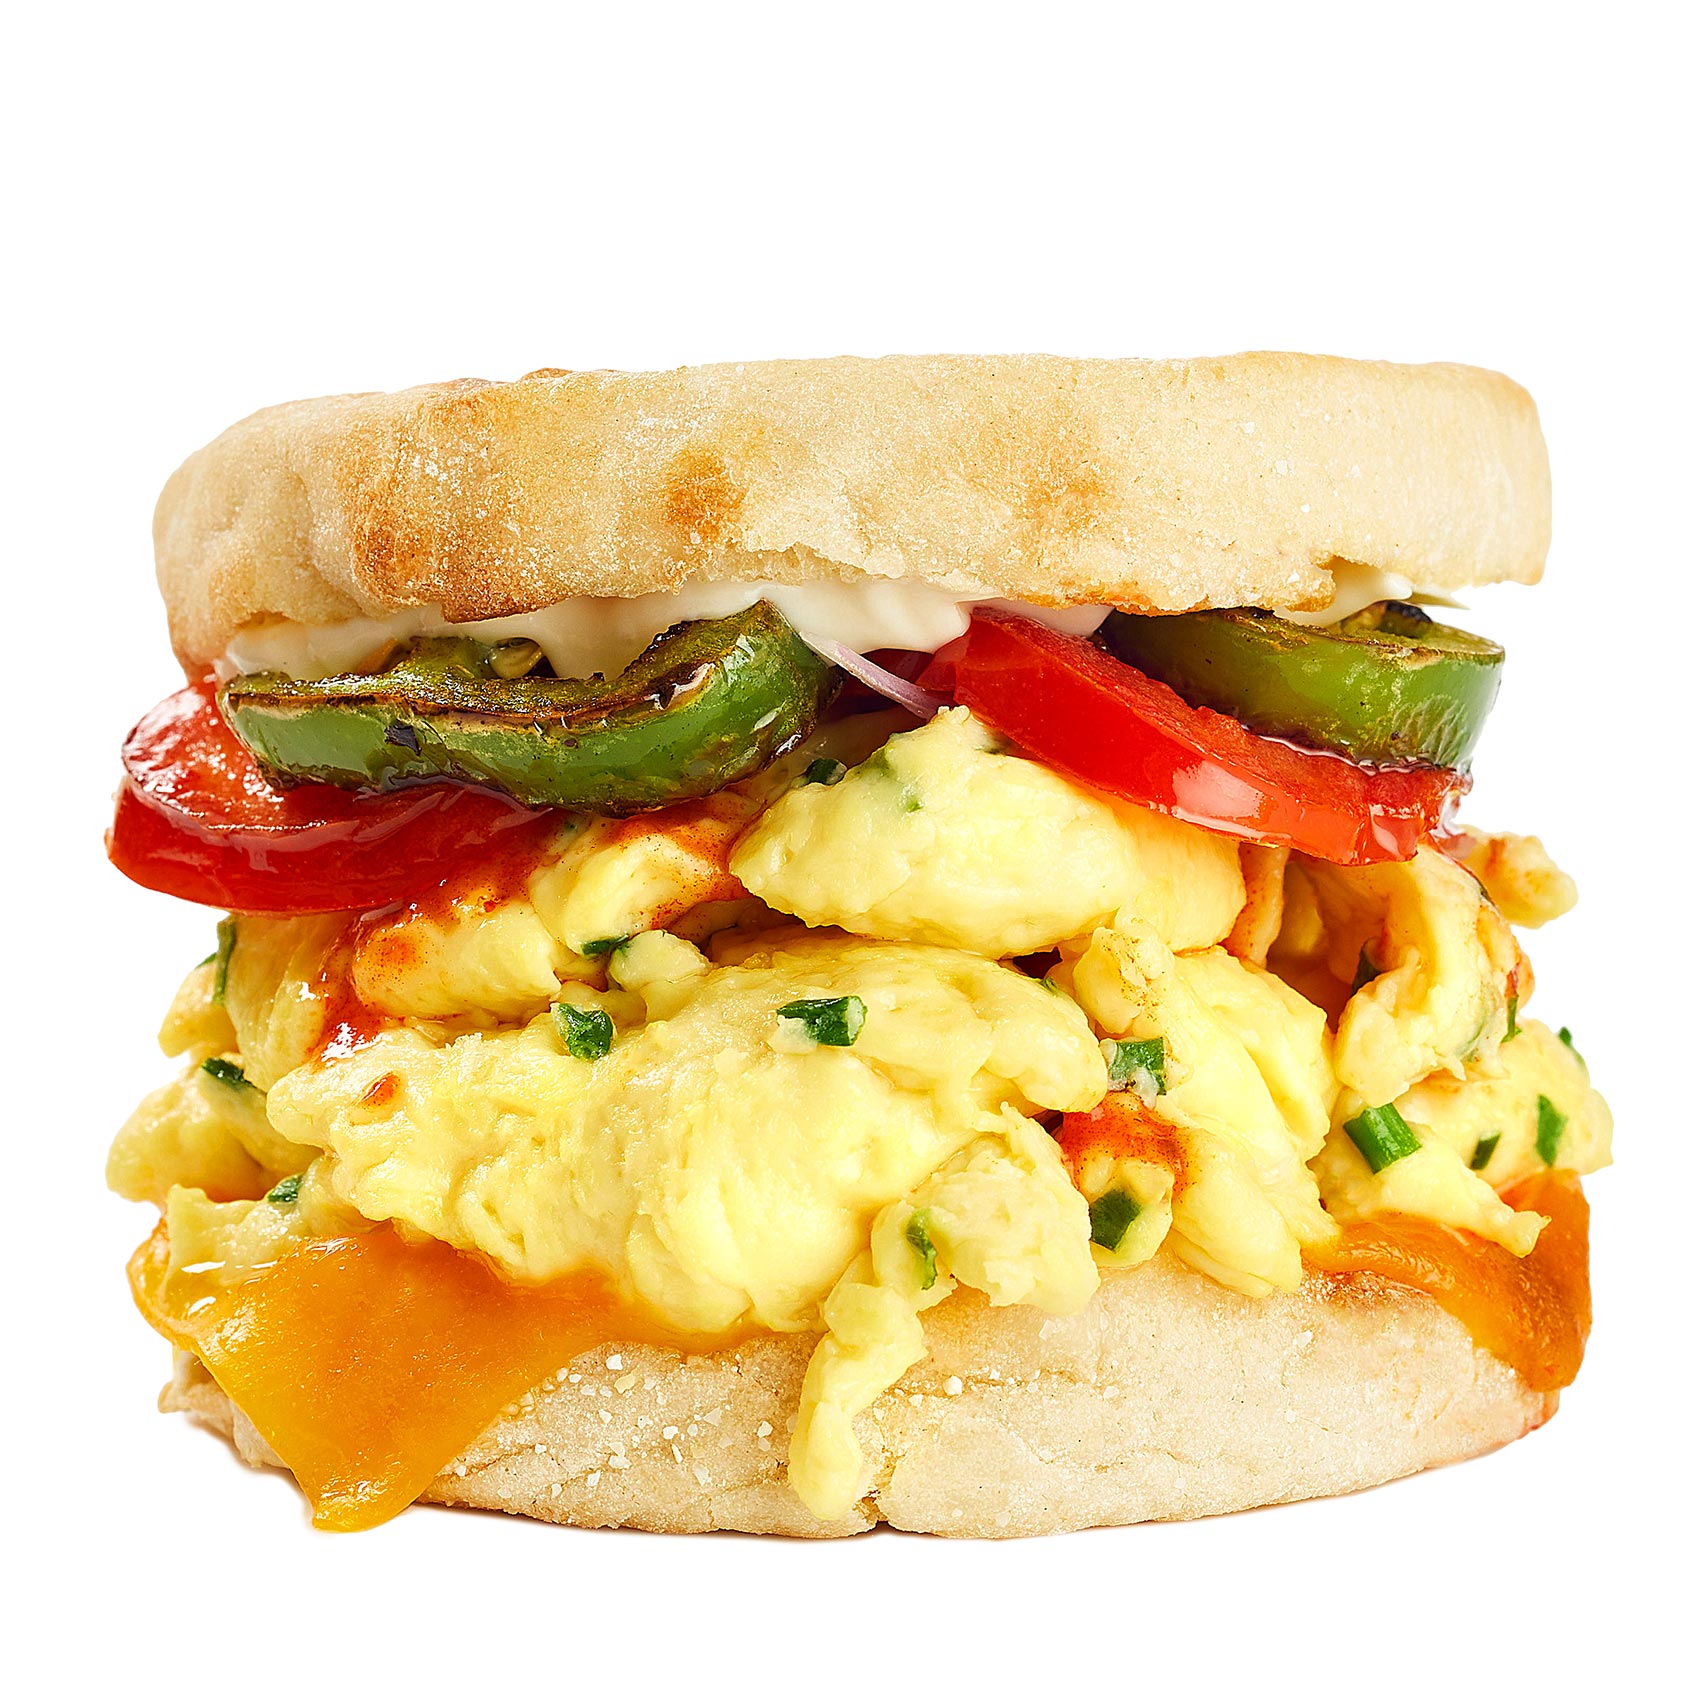 JUST-Egg-scramble-sandwich-English-Muffin_Sq-LAYERS